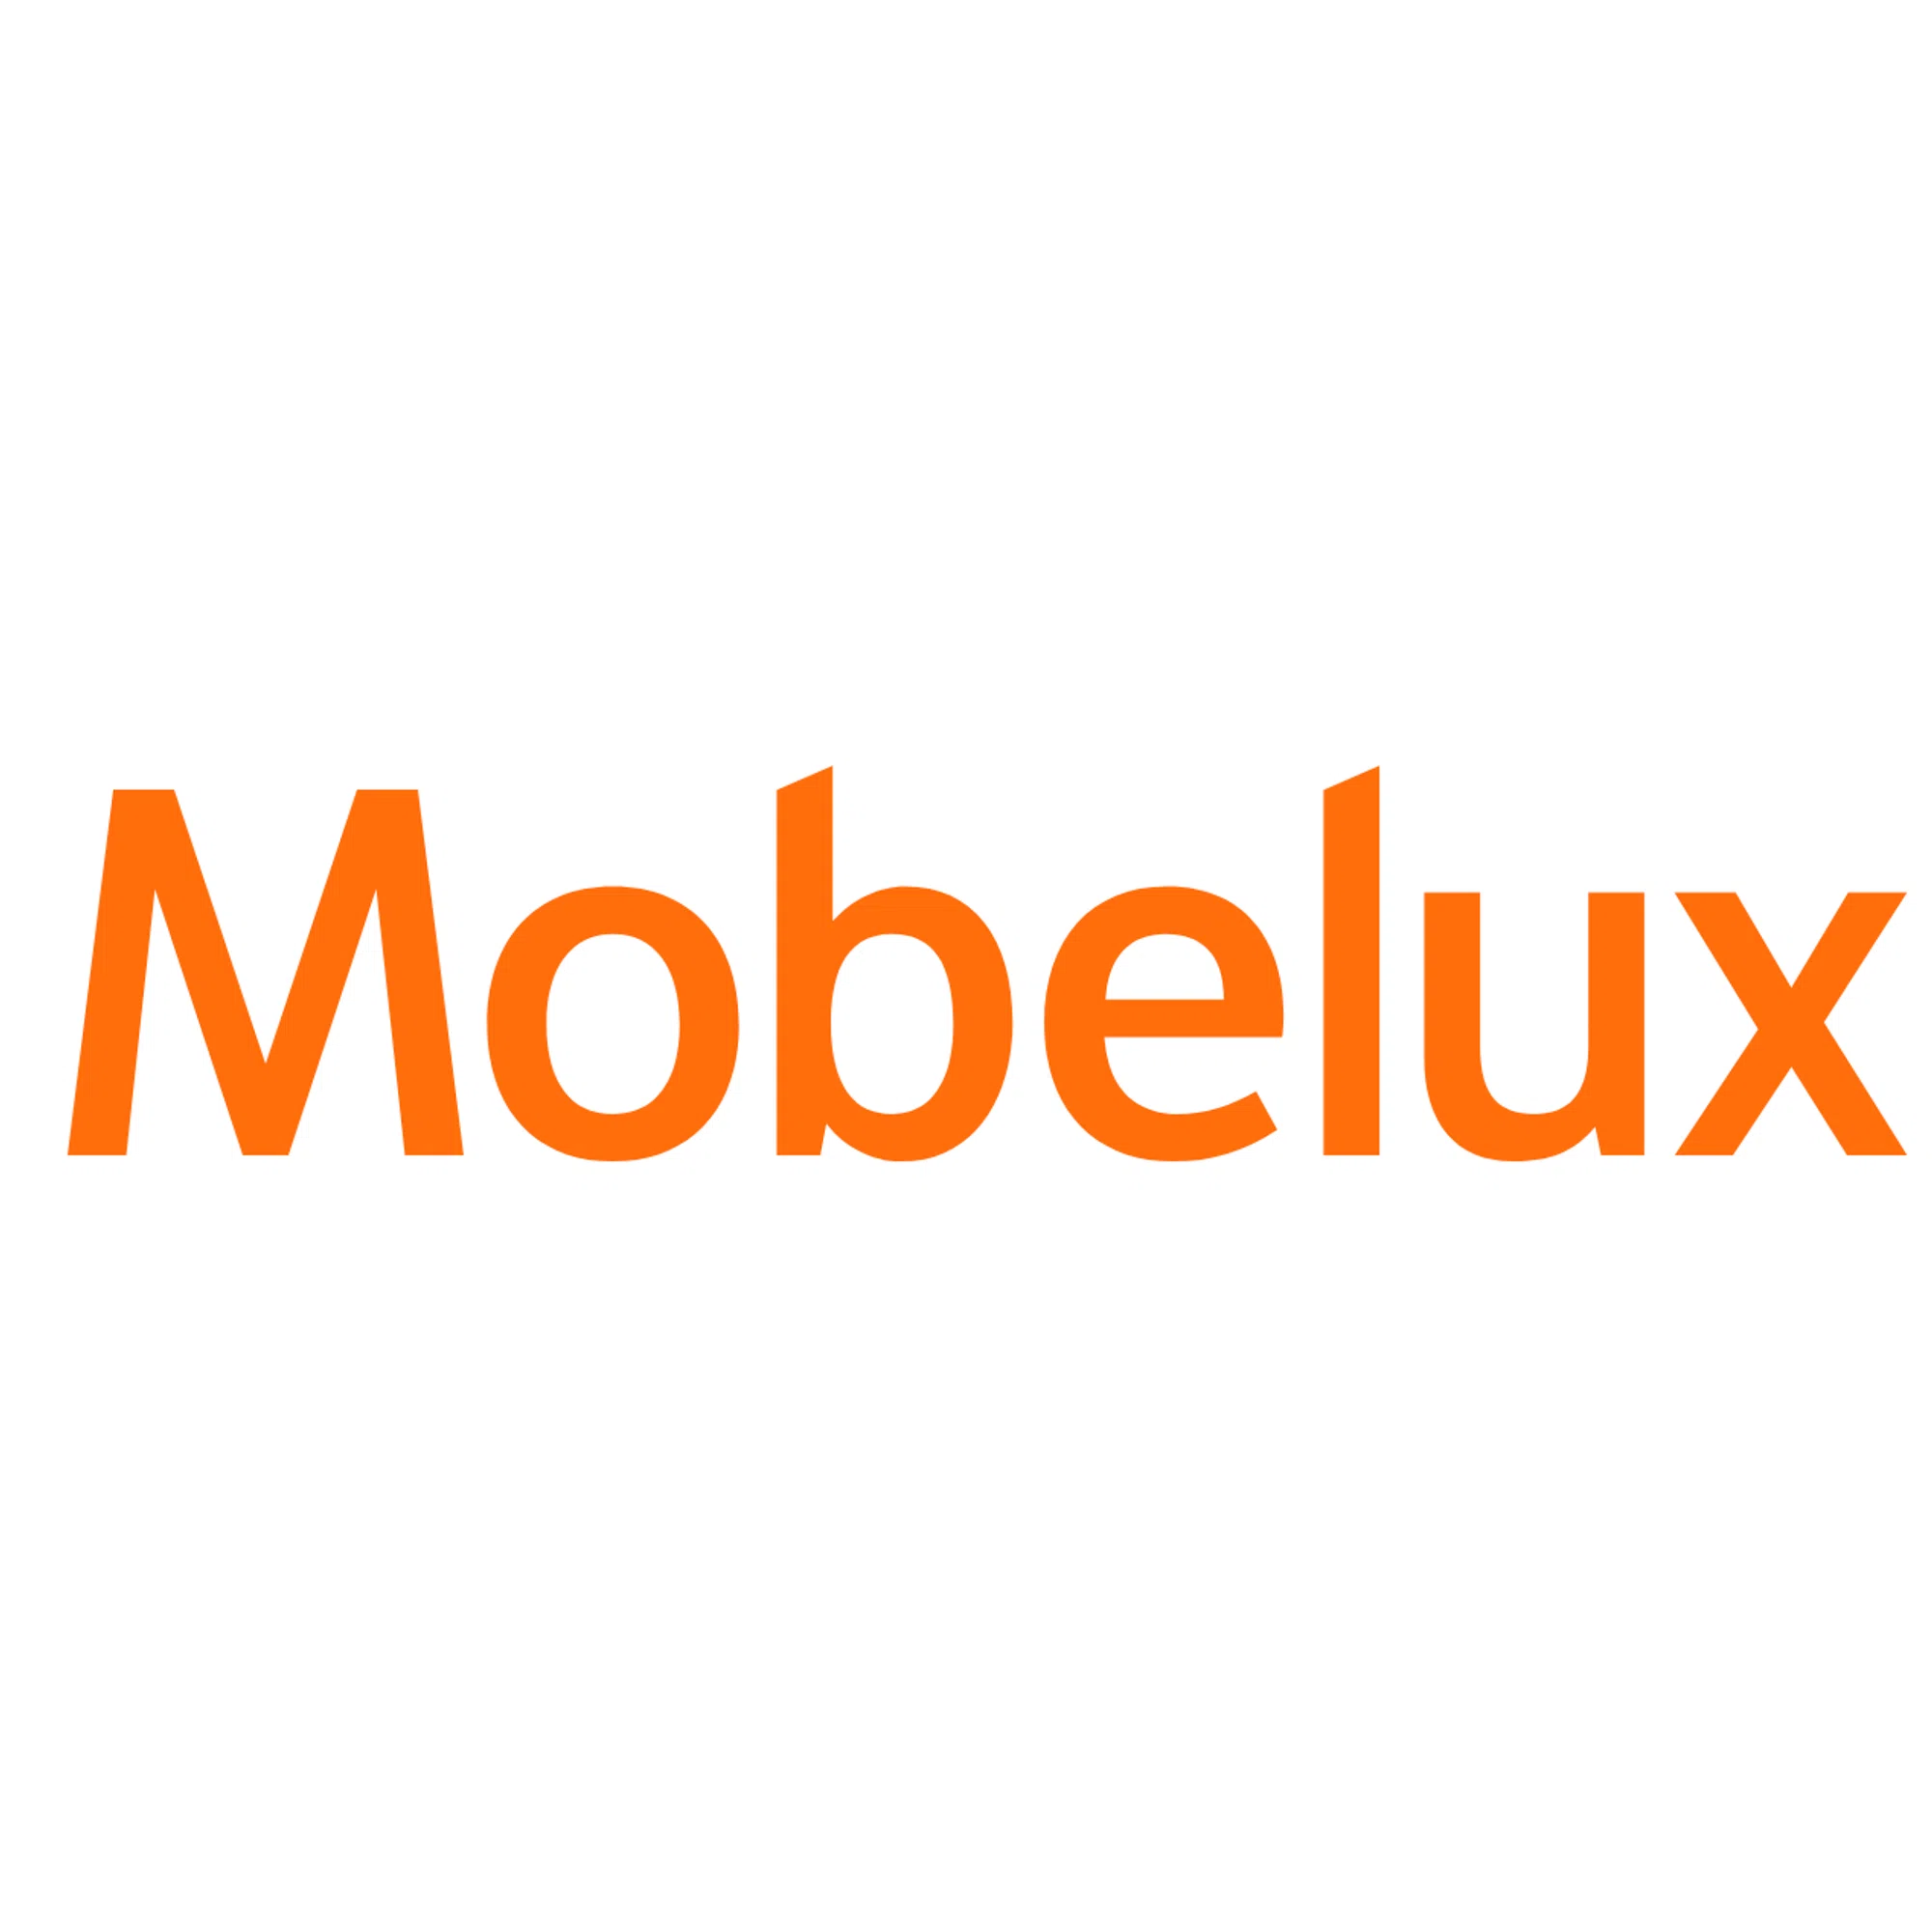 mobelux.com logo